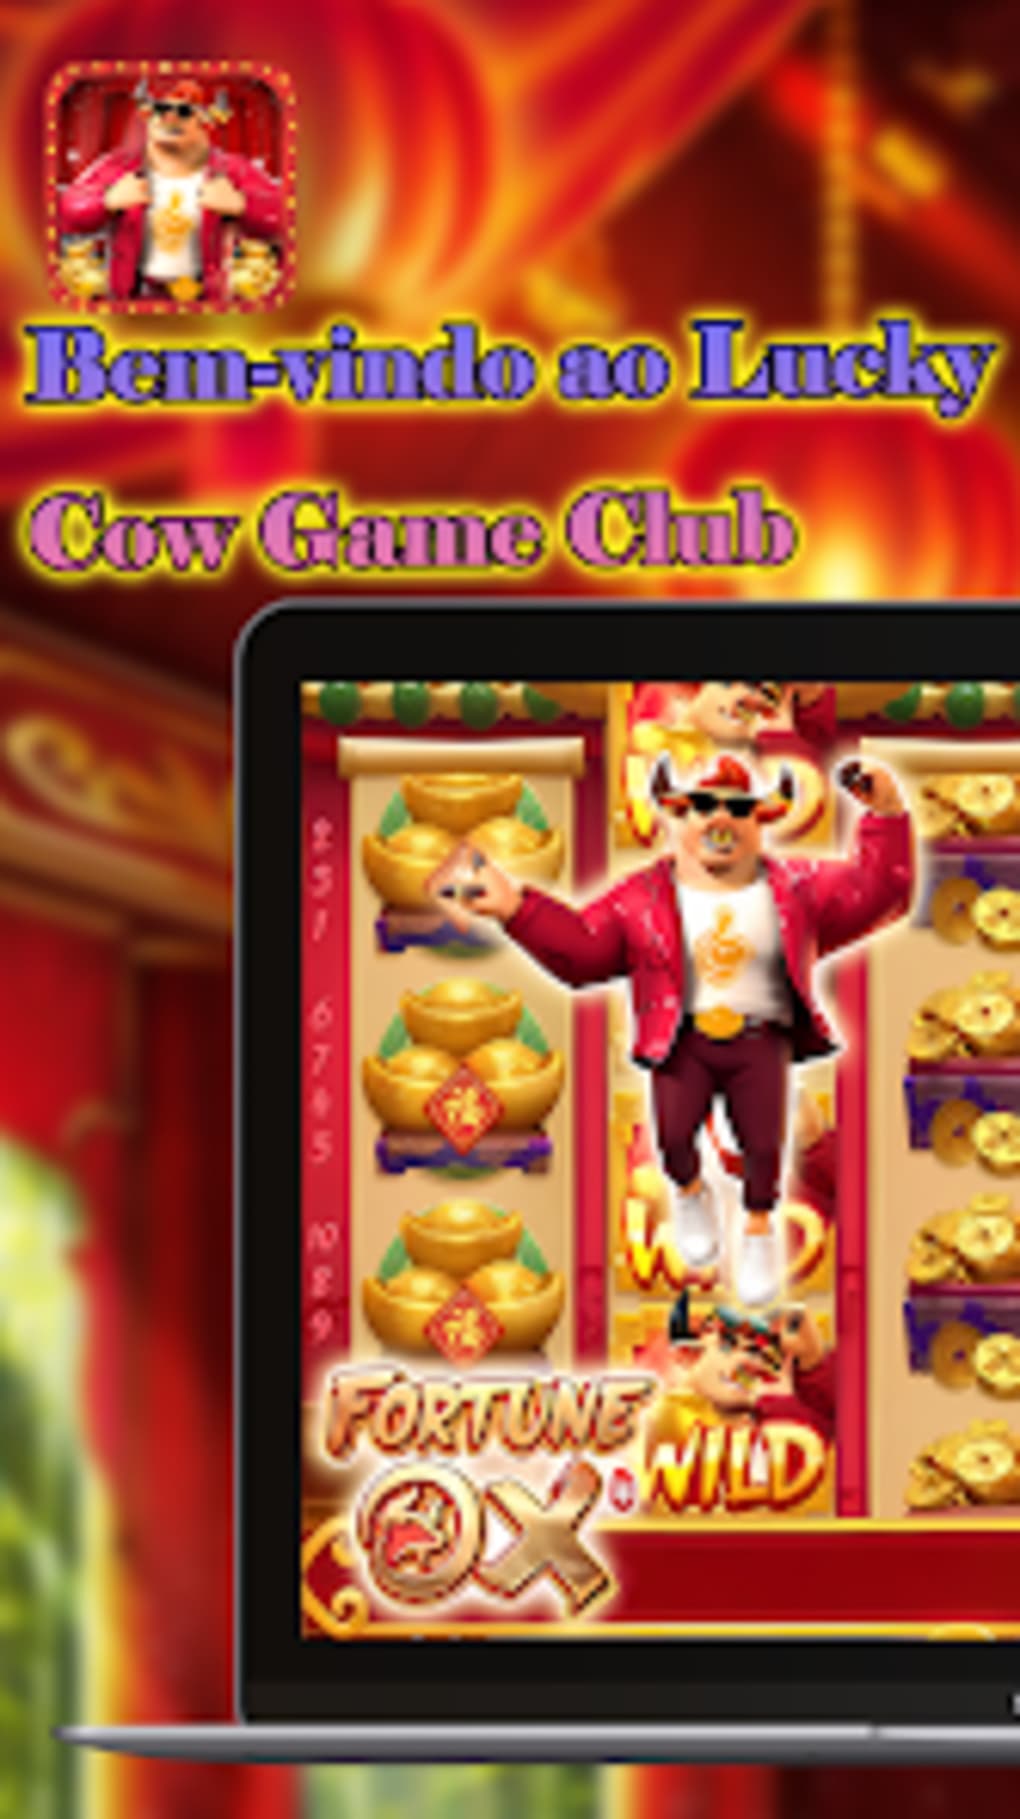 Fortune Ox Slot: Jogo Demo Grátis